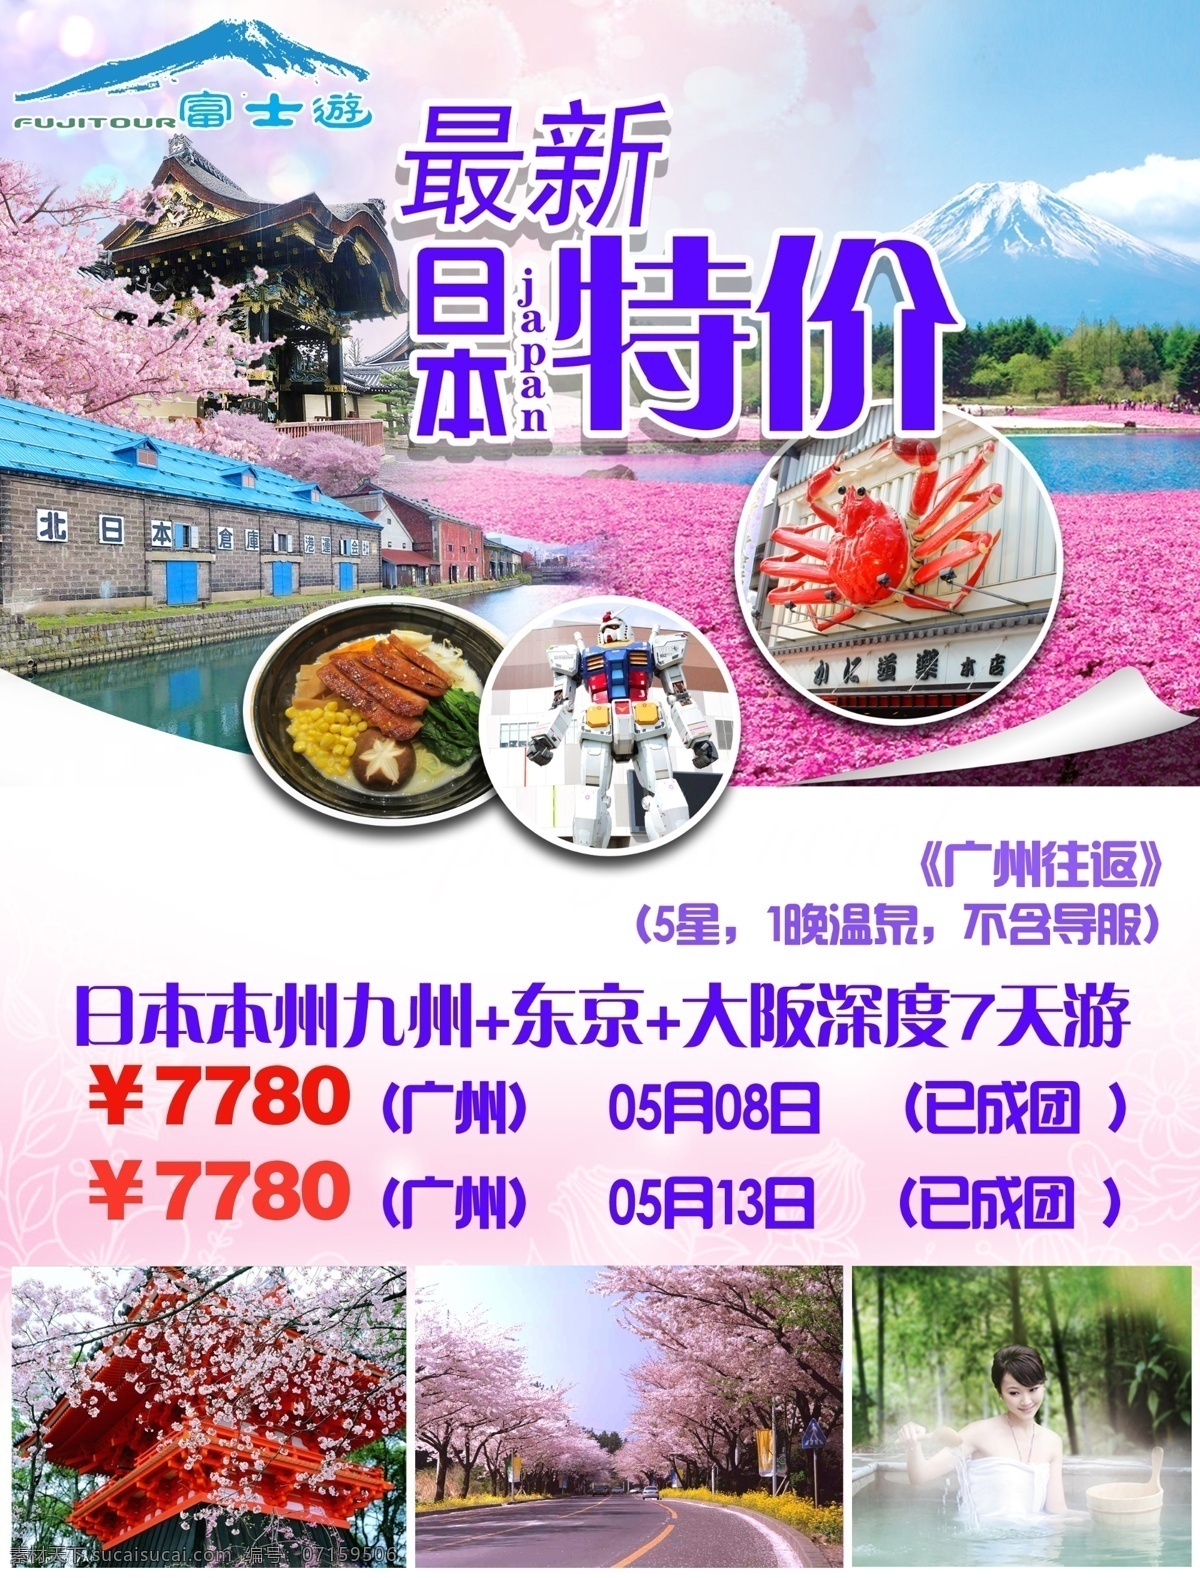 九州广告彩图 日本 旅游 宣传 彩图 白色